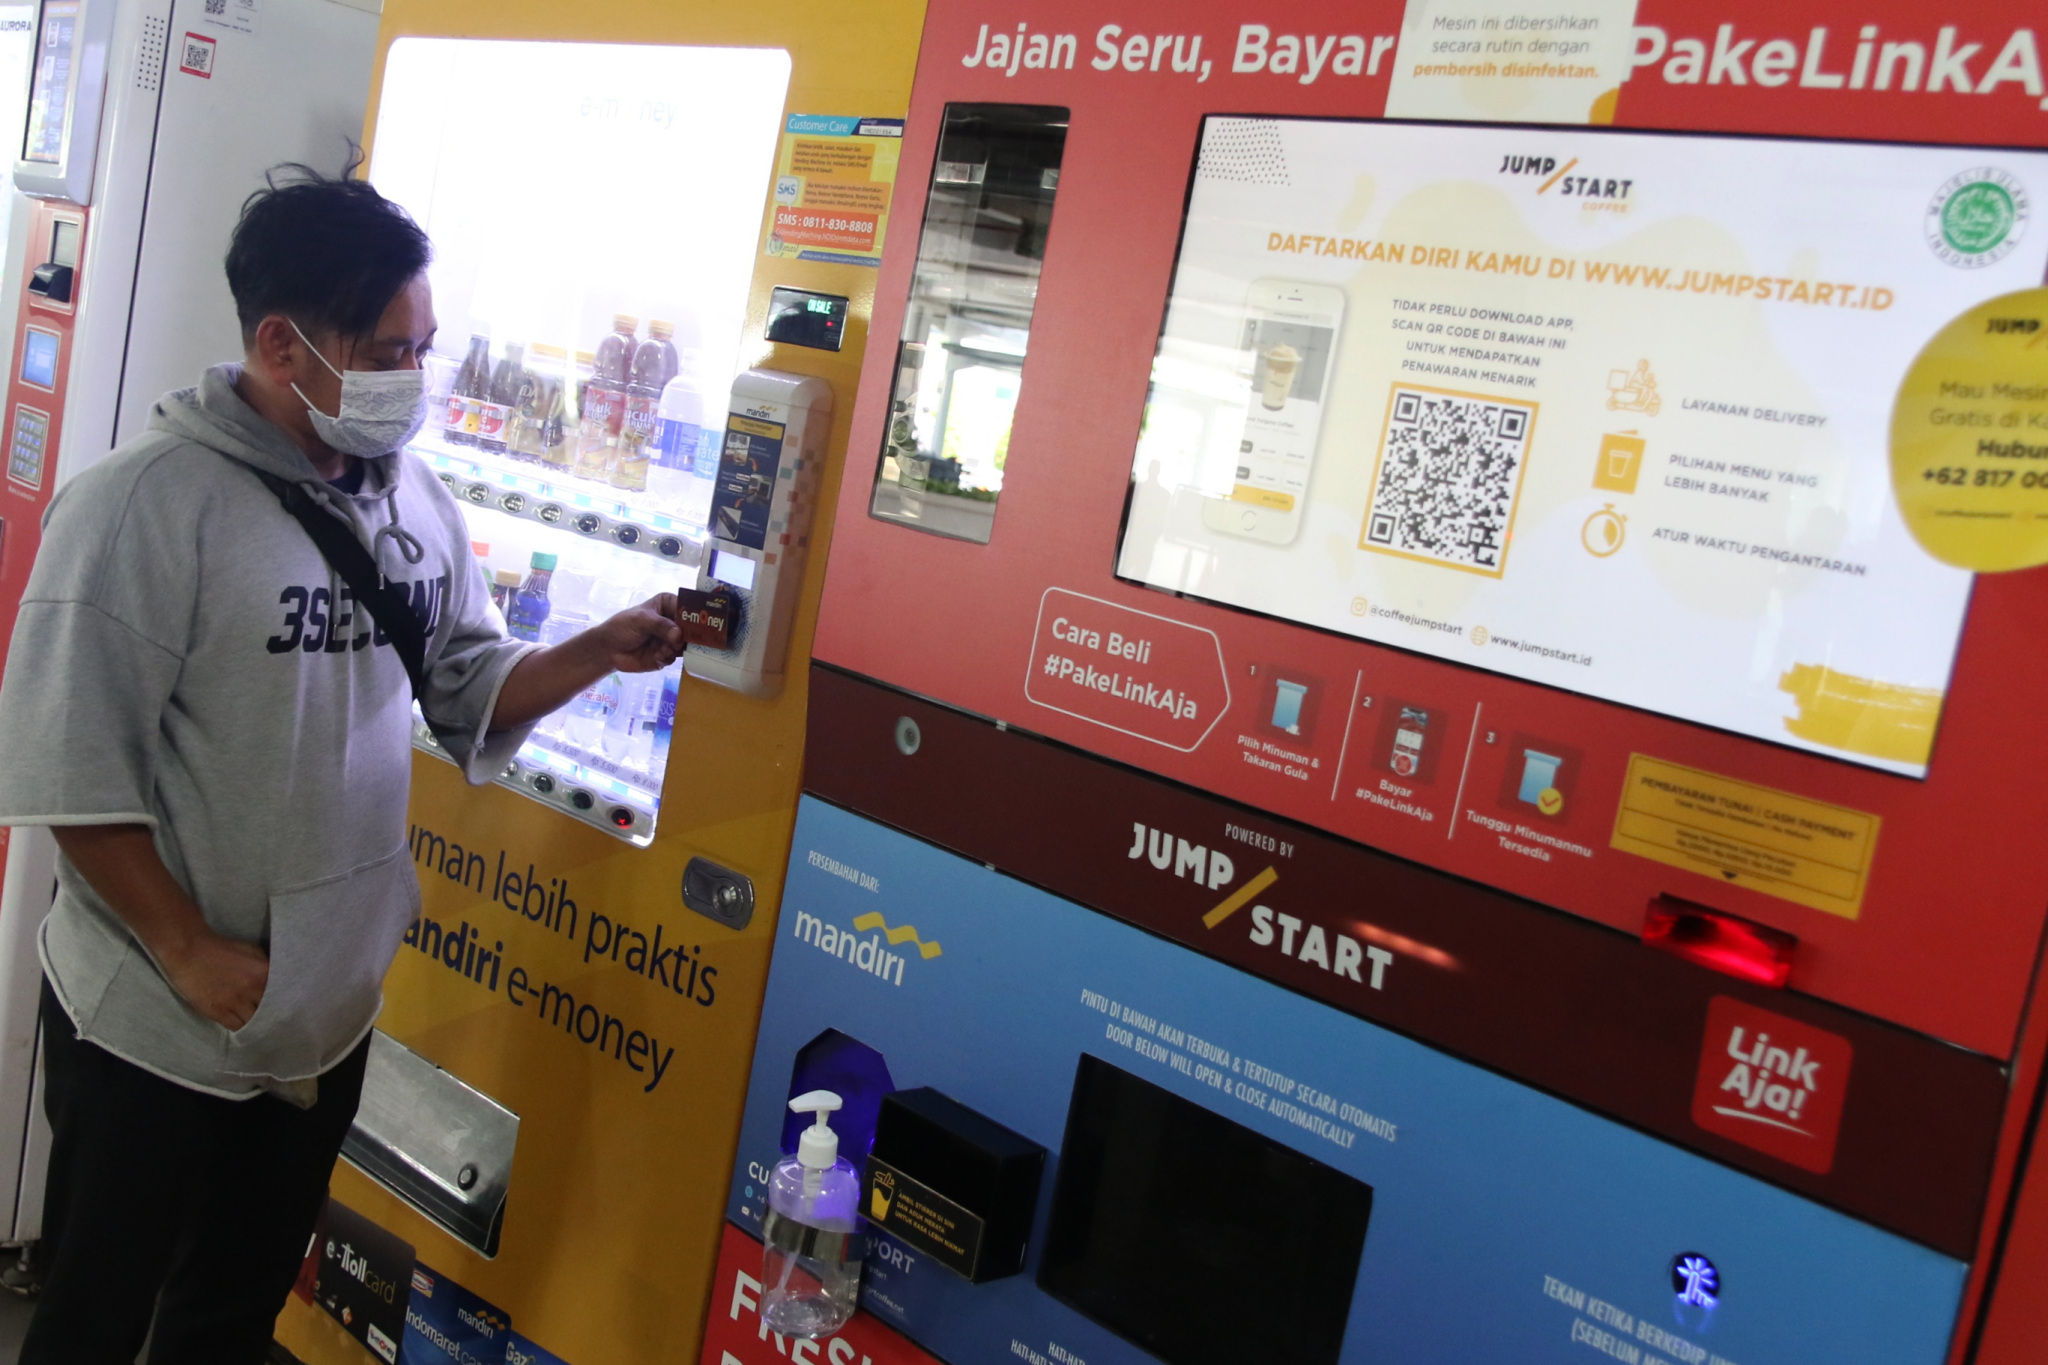 <p>Warga bertransaksi dengan uang elektronik berbasis kartu di Jakarta, Rabu, 2 Desember 2020. Foto: Ismail Pohan/TrenAsia</p>
